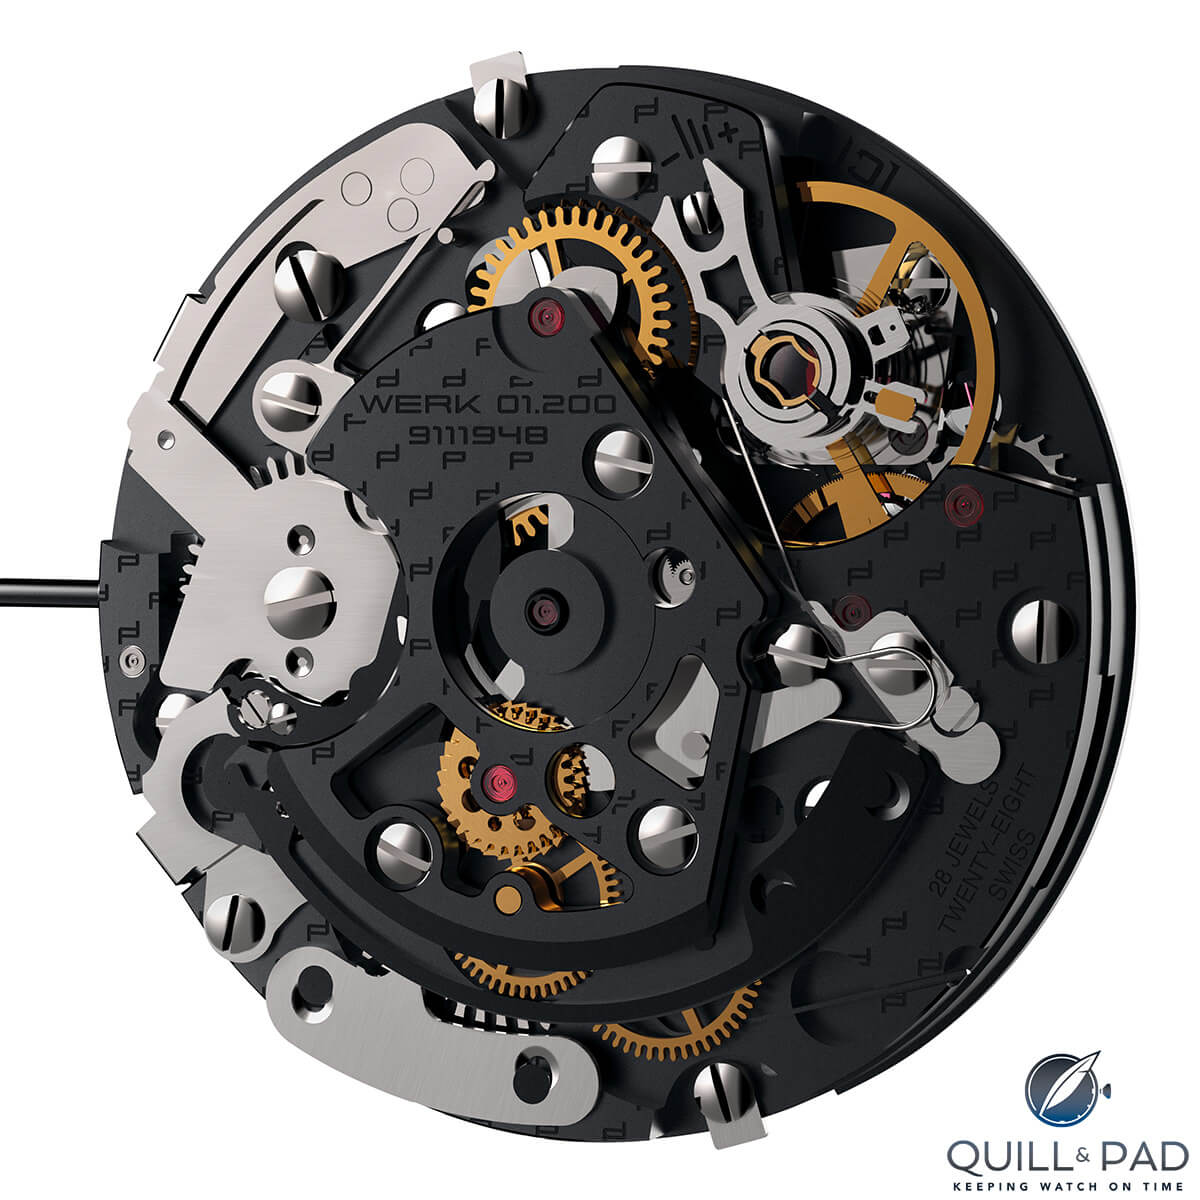 Porsche Design Caliber Werk 01.200 in-house chronograph movement